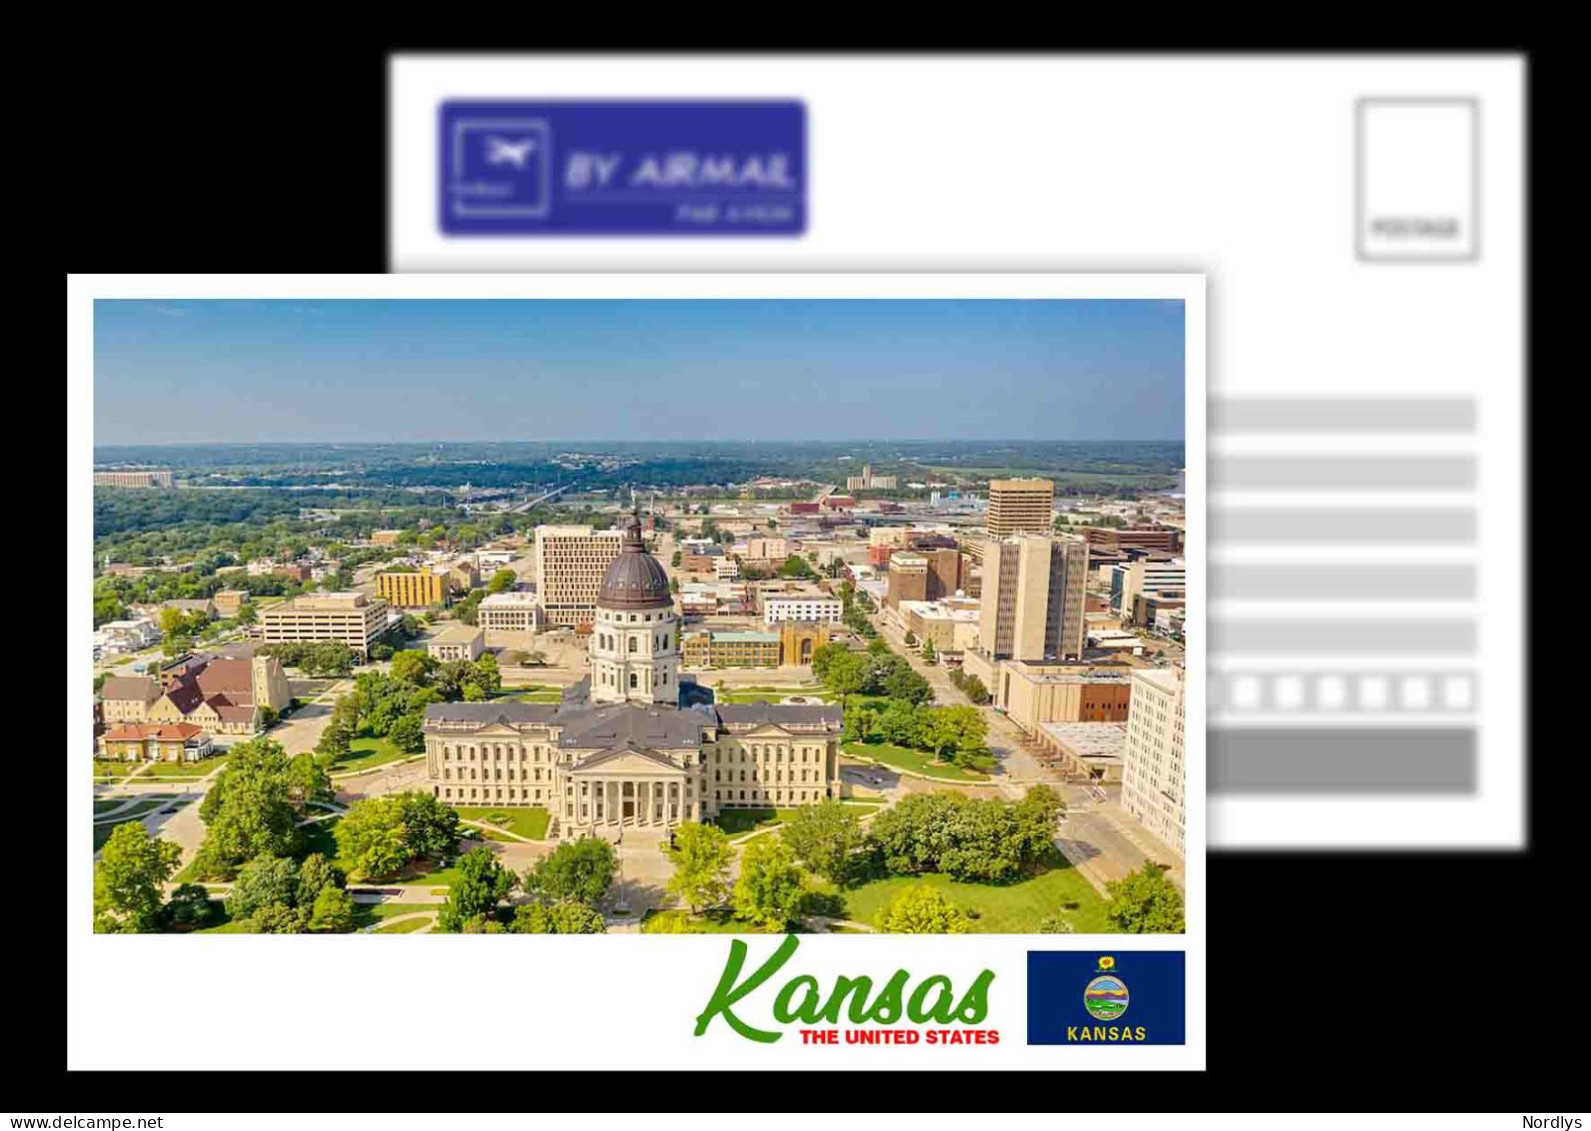 Kansas / US States / View Card - Topeka